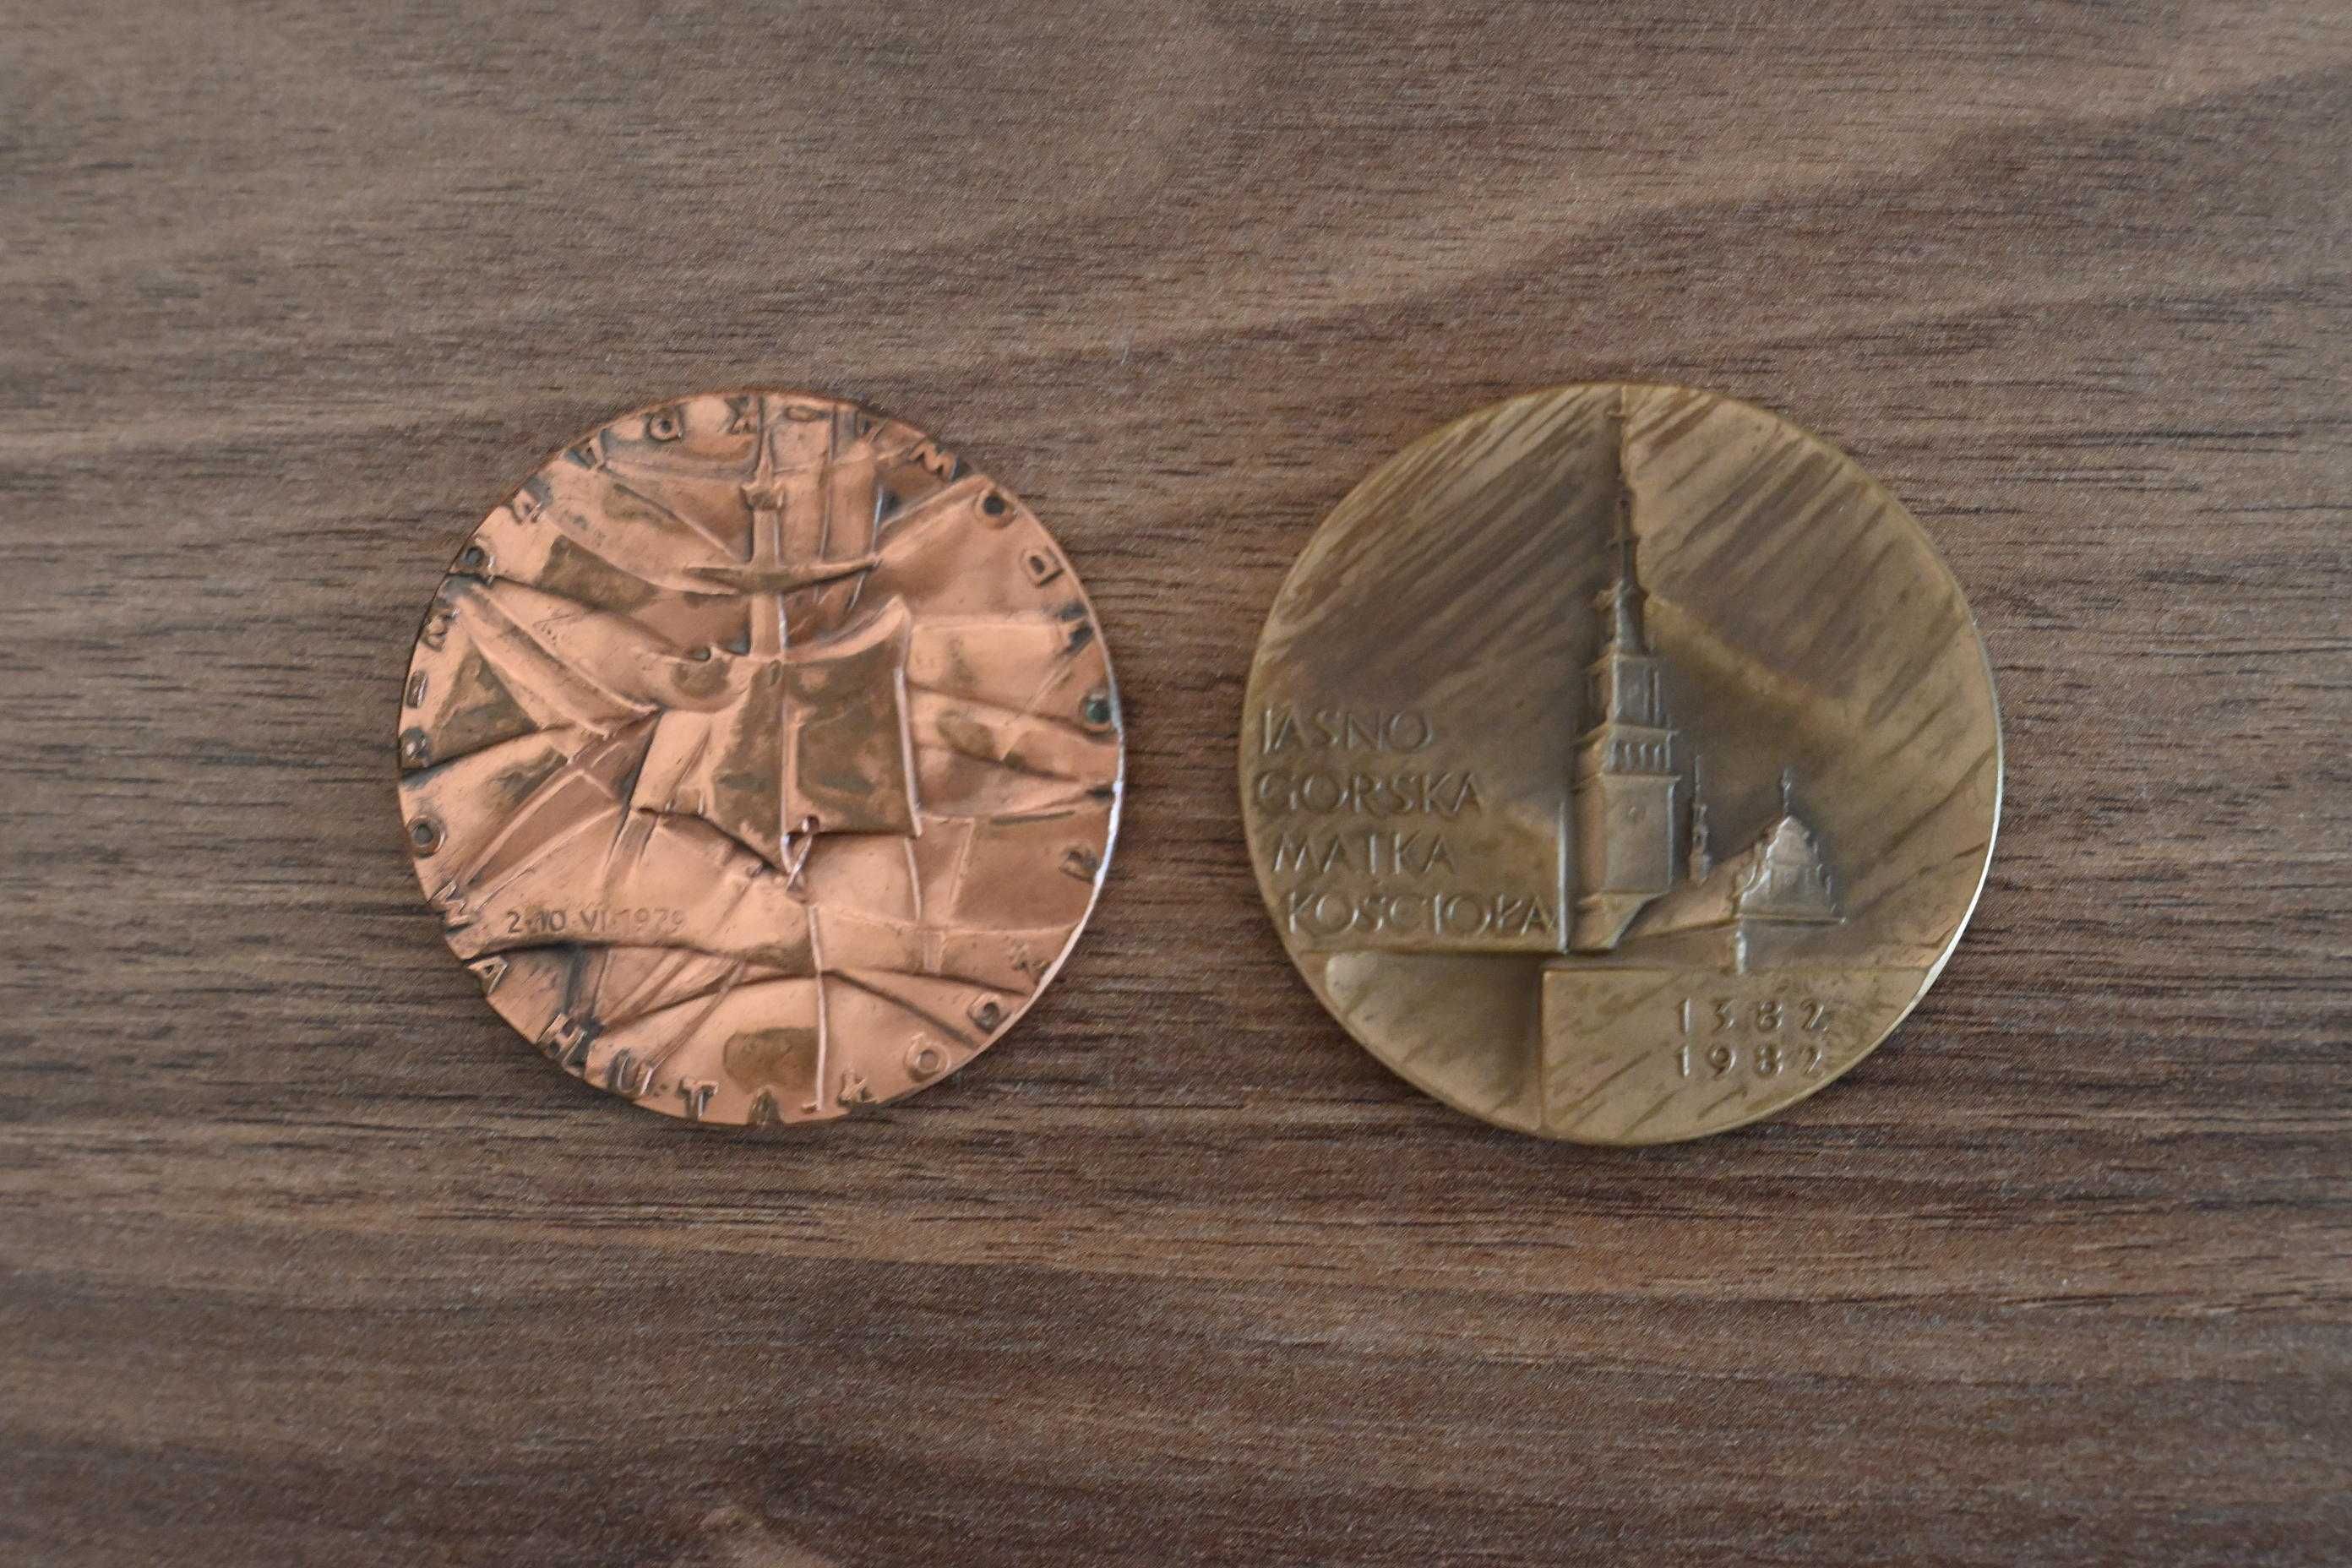 Stare monety (22 szt.) i medale (2 szt.)